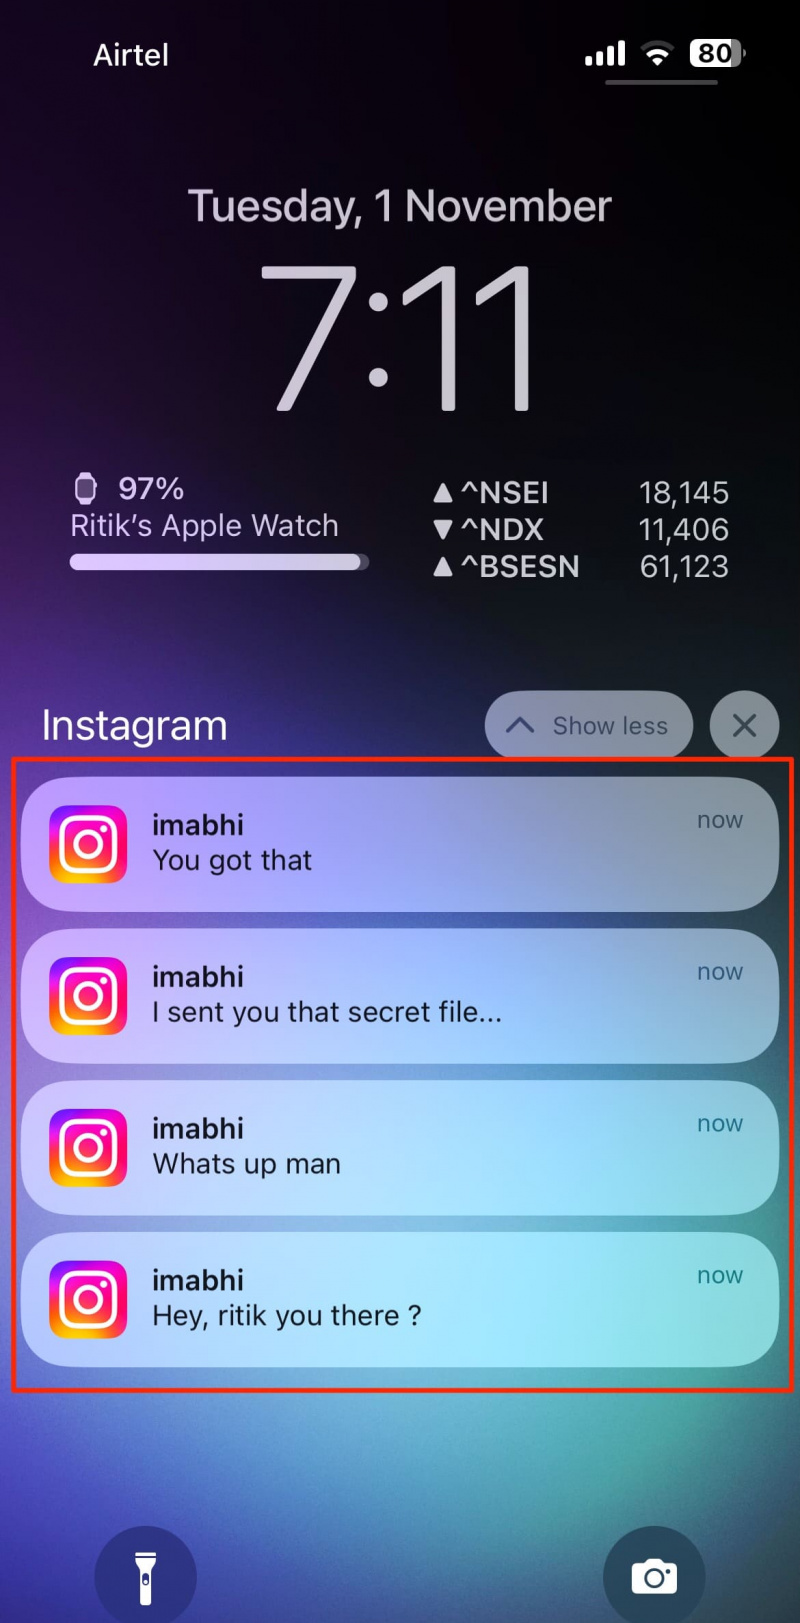   Llegeix els missatges d'Instagram des de les notificacions d'iOS